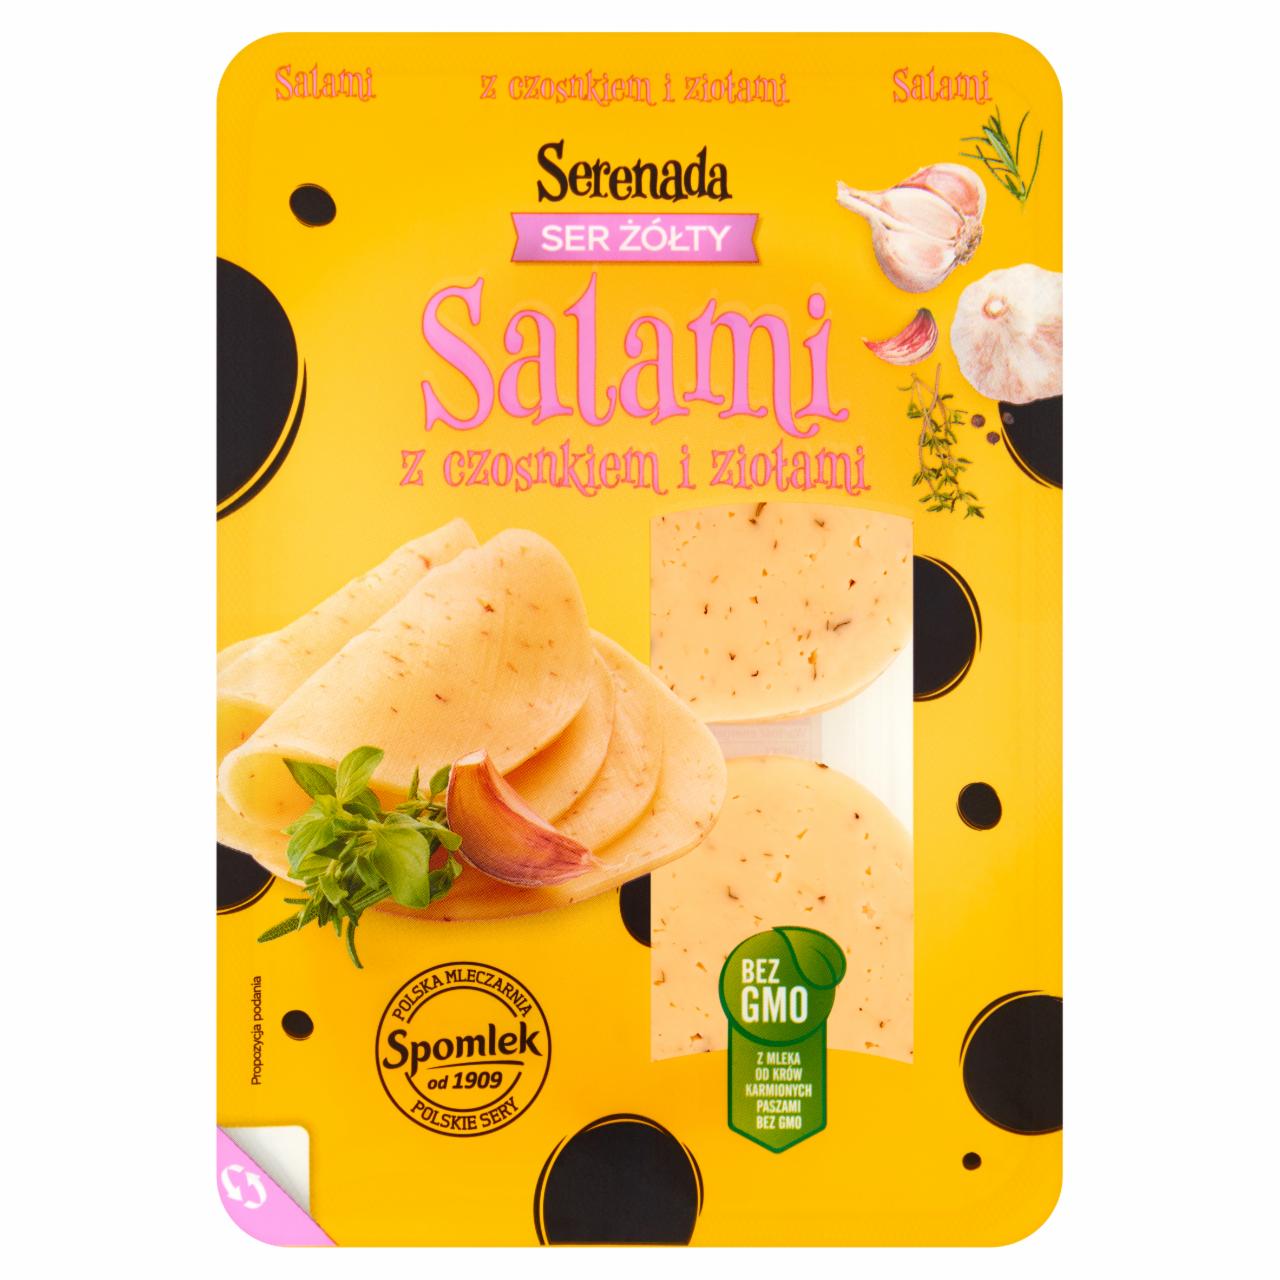 Zdjęcia - Serenada Ser żółty Salami z czosnkiem i ziołami 135 g